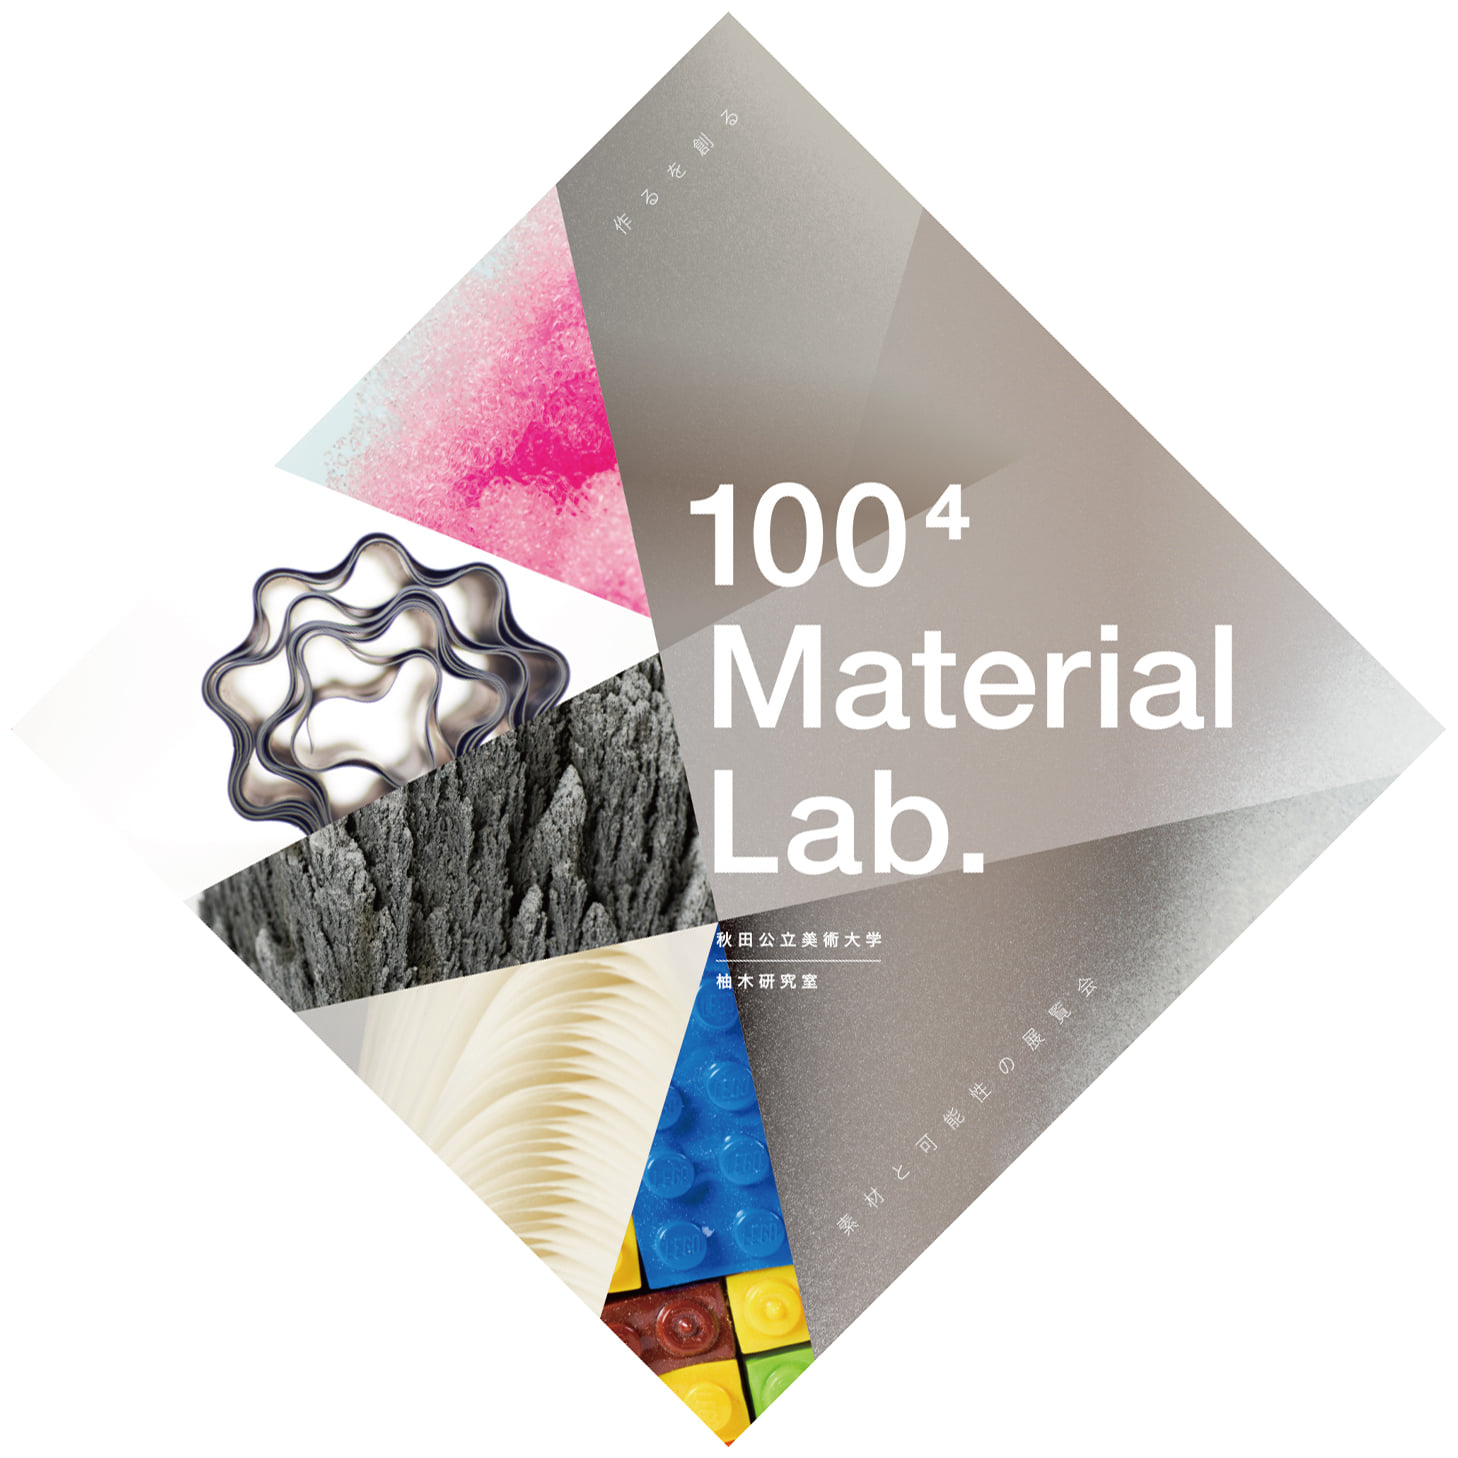 柚木恵介准教授が 「100⁴ Material Lab. -作るを創る、素材と可能性の展覧会-」を開催します